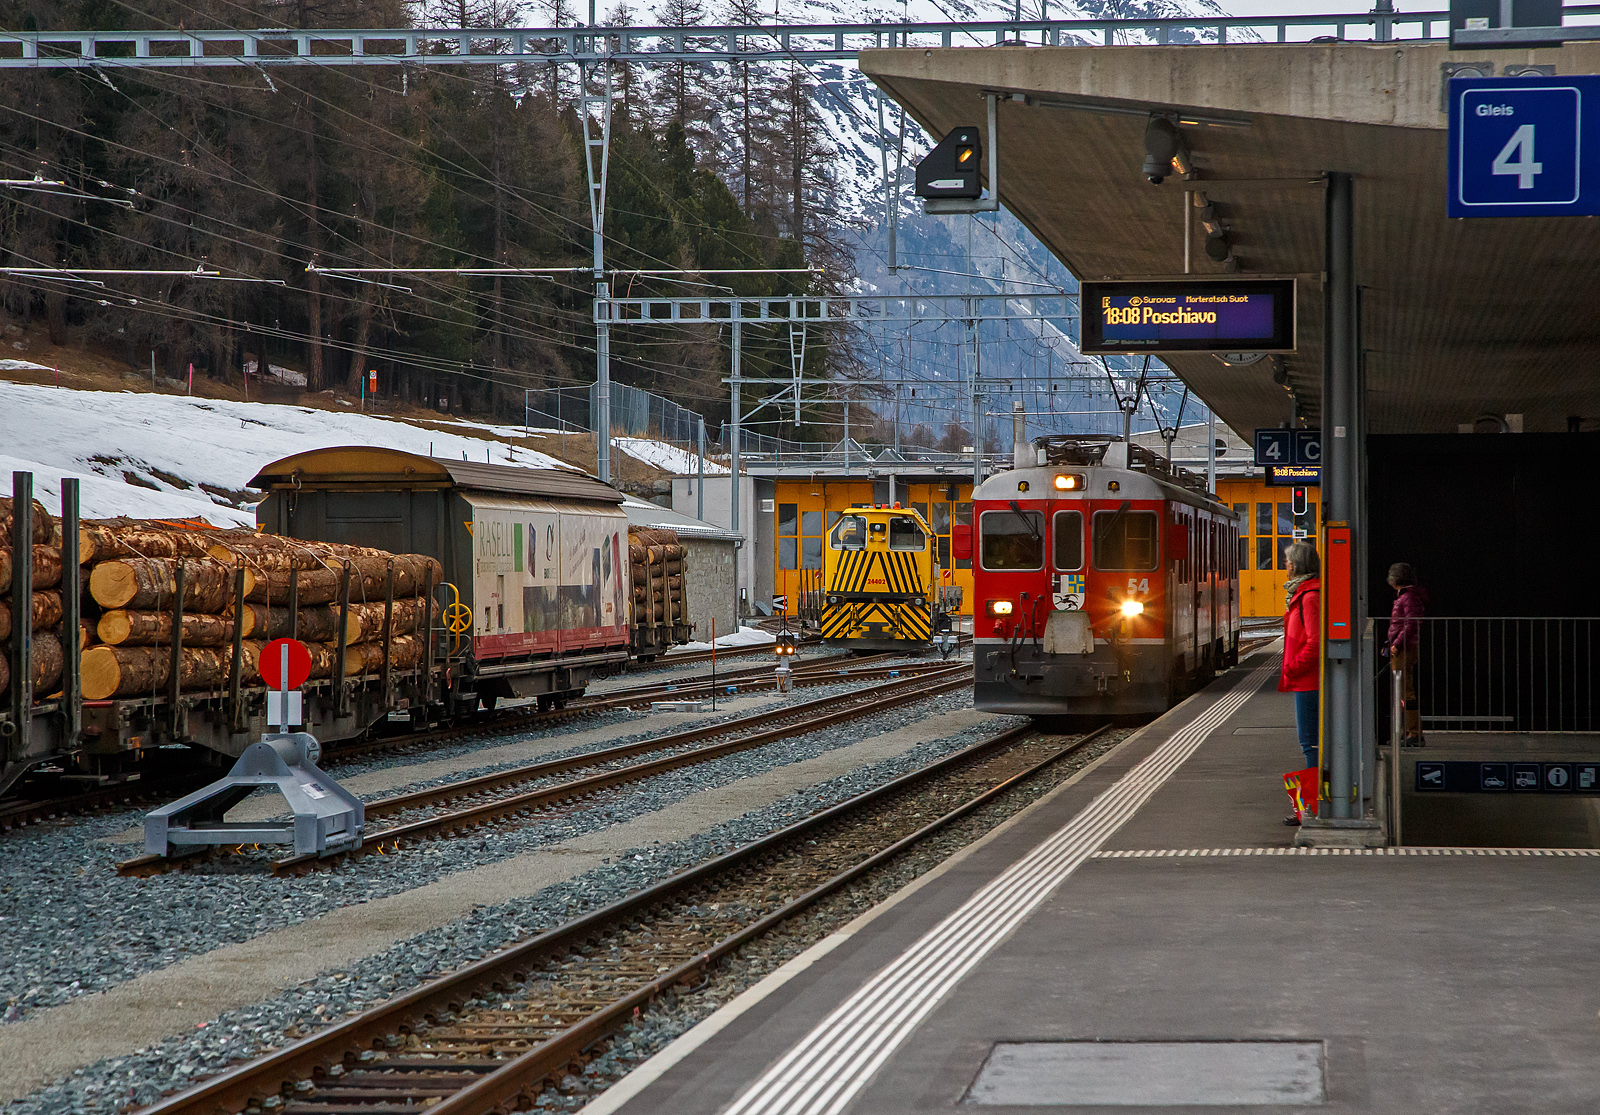 Die beiden RhB ABe 4/4 III Triebwagen 54  Hakone  und  51  Poschiavo  erreichen am 21.03.2023, als RhB-Regionalzug von St. Moritz nach Poschiavo, den Bahnhof Pontresina. Noch ist es ein reiner Personenzug, hier im Bahnhof wird er zum PmG (Personenzug mit Güterbeförderung), denn er bekommt hier 3 mit Holz beladene vierachsige Flachwagen vom Typ “Sp-w“ angehangen. Bei der Fahrt hinauf nach Ospizio Bernina merkten wir wie die Triebwagen arbeiten mussten. 

Als ABe 4/4 III werden bei der Rhätischen Bahn (RhB) die 1988 und 1990 beschafften Gleichstrom-Elektrotriebwagen mit den Betriebsnummern 51 bis 56 bezeichnet. Die Schlepptriebwagen werden nur auf der Berninabahn eingesetzt, wo sie die Verkehrszunahme bewältigen helfen. 

Die von SWA (Schindler Waggon AG in Altenrhein) und BBC (Brown, Boveri & Cie. in Baden) in zwei Serien (1988 und 1990)zu je drei Stück gebauten und gelieferten Triebwagen waren seinerzeit die ersten RhB-Triebfahrzeuge in Umrichtertechnik mit Drehstrom-Asynchronmotoren. Zudem gehörten sie weltweit zu den ersten Gleichstromtriebfahrzeugen mit GTO-Thyristoren. Sie sind 65 km/h schnell, 47 Tonnen schwer und waren mit einer Stundenleistung von 1.016 kW bei Ablieferung die stärksten Gleichstromtriebwagen der RhB. Ihre Anhängelast bei 70 Promille Steigung beträgt 90 beziehungsweise 95 Tonnen, sofern nur Vierachser im Zug sind. Sie weisen zwölf Sitzplätze in der ersten und 16 in der zweiten Klasse auf. Dank Vielfachsteuerung können sie untereinander und auch mit den älteren ABe 4/4 II 41–49 sowie Gem 4/4 801–802 in Doppeltraktion fahren, wovon im täglichen Betrieb reger Gebrauch gemacht wird. Eine Doppeltraktion von zwei ABe 4/4 III hat theoretisch eine Leistungsreserve für die Beförderung von weiteren 50 Tonnen, da die maximale Zughakenlast von 140 Tonnen auf der Berninabahn nicht überschritten werden darf.

TECHNISCHE DATEN:
Gebaute Anzahl: 6 (Nummerierung 51 – 56)
Hersteller: SWA / BBC
Baujahre: 1988 und 1990
Achsformel: Bo′Bo′
Spurweite: 1.000 mm
Länge über Puffer: 16.886 mm
Radstand : 13.010 mm
Breite: 2.650 mm
Dienstgewicht: 47 t 
Höchstgeschwindigkeit: 65 km/h
Dauerleistung: 1.016  kW
Anfahrzugkraft: 178 kN
Stundenzugkraft: 108 kN bei 34 km/h
Stromsystem: 1 kV DC (Gleichstrom)
Stromübertragung: 2 Einholmstromabnehmer
Steuerung:  GTO-Thyristor
Sitzplätze: 1. Klasse: 12 / 2. Klasse: 16
